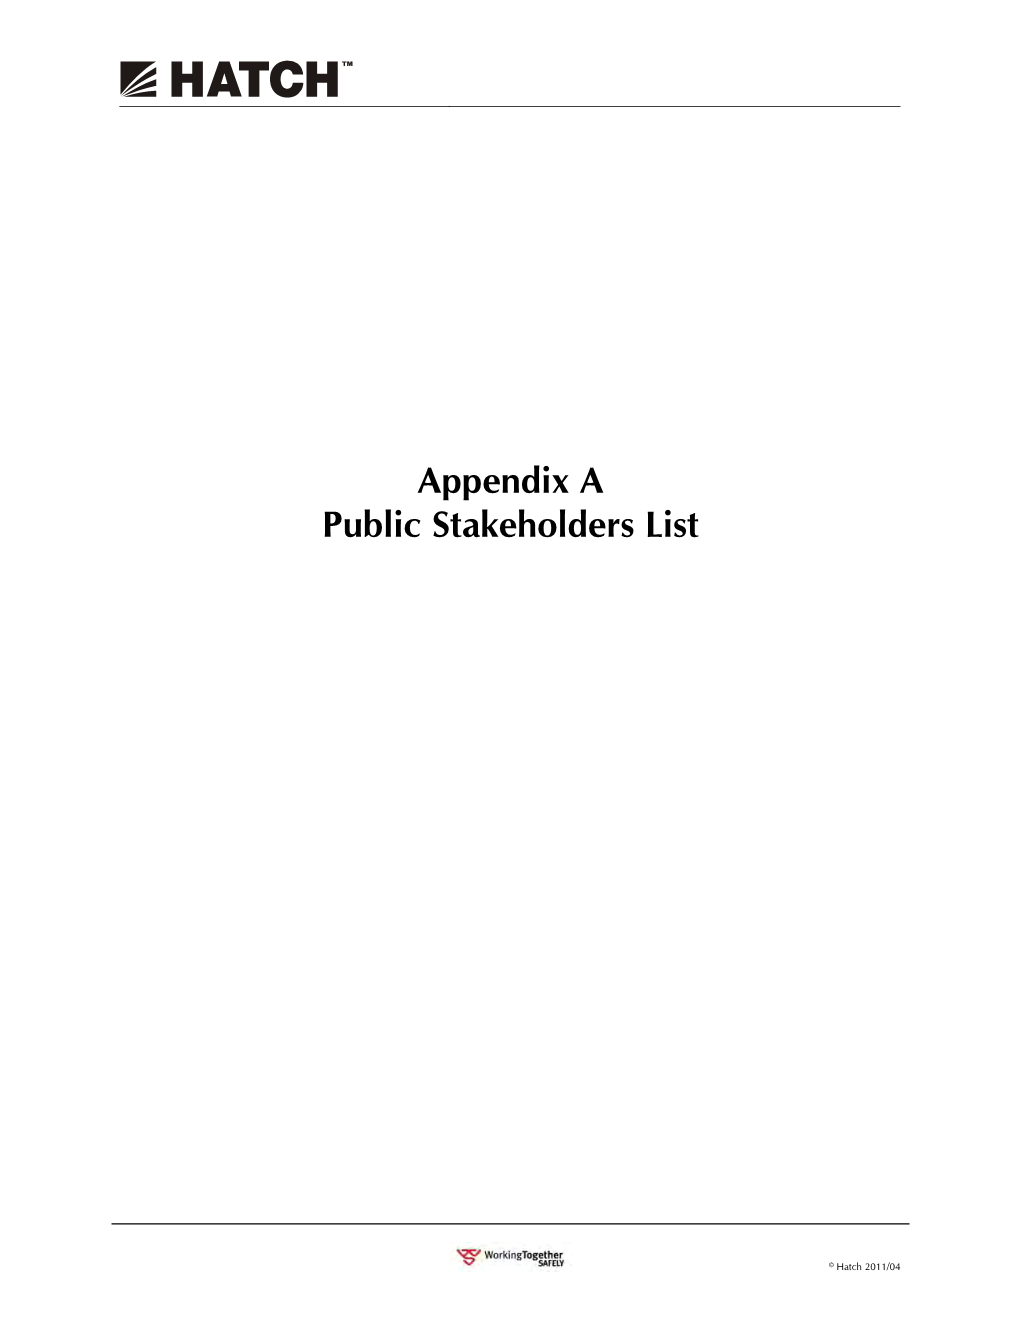 Appendix a Public Stakeholders List